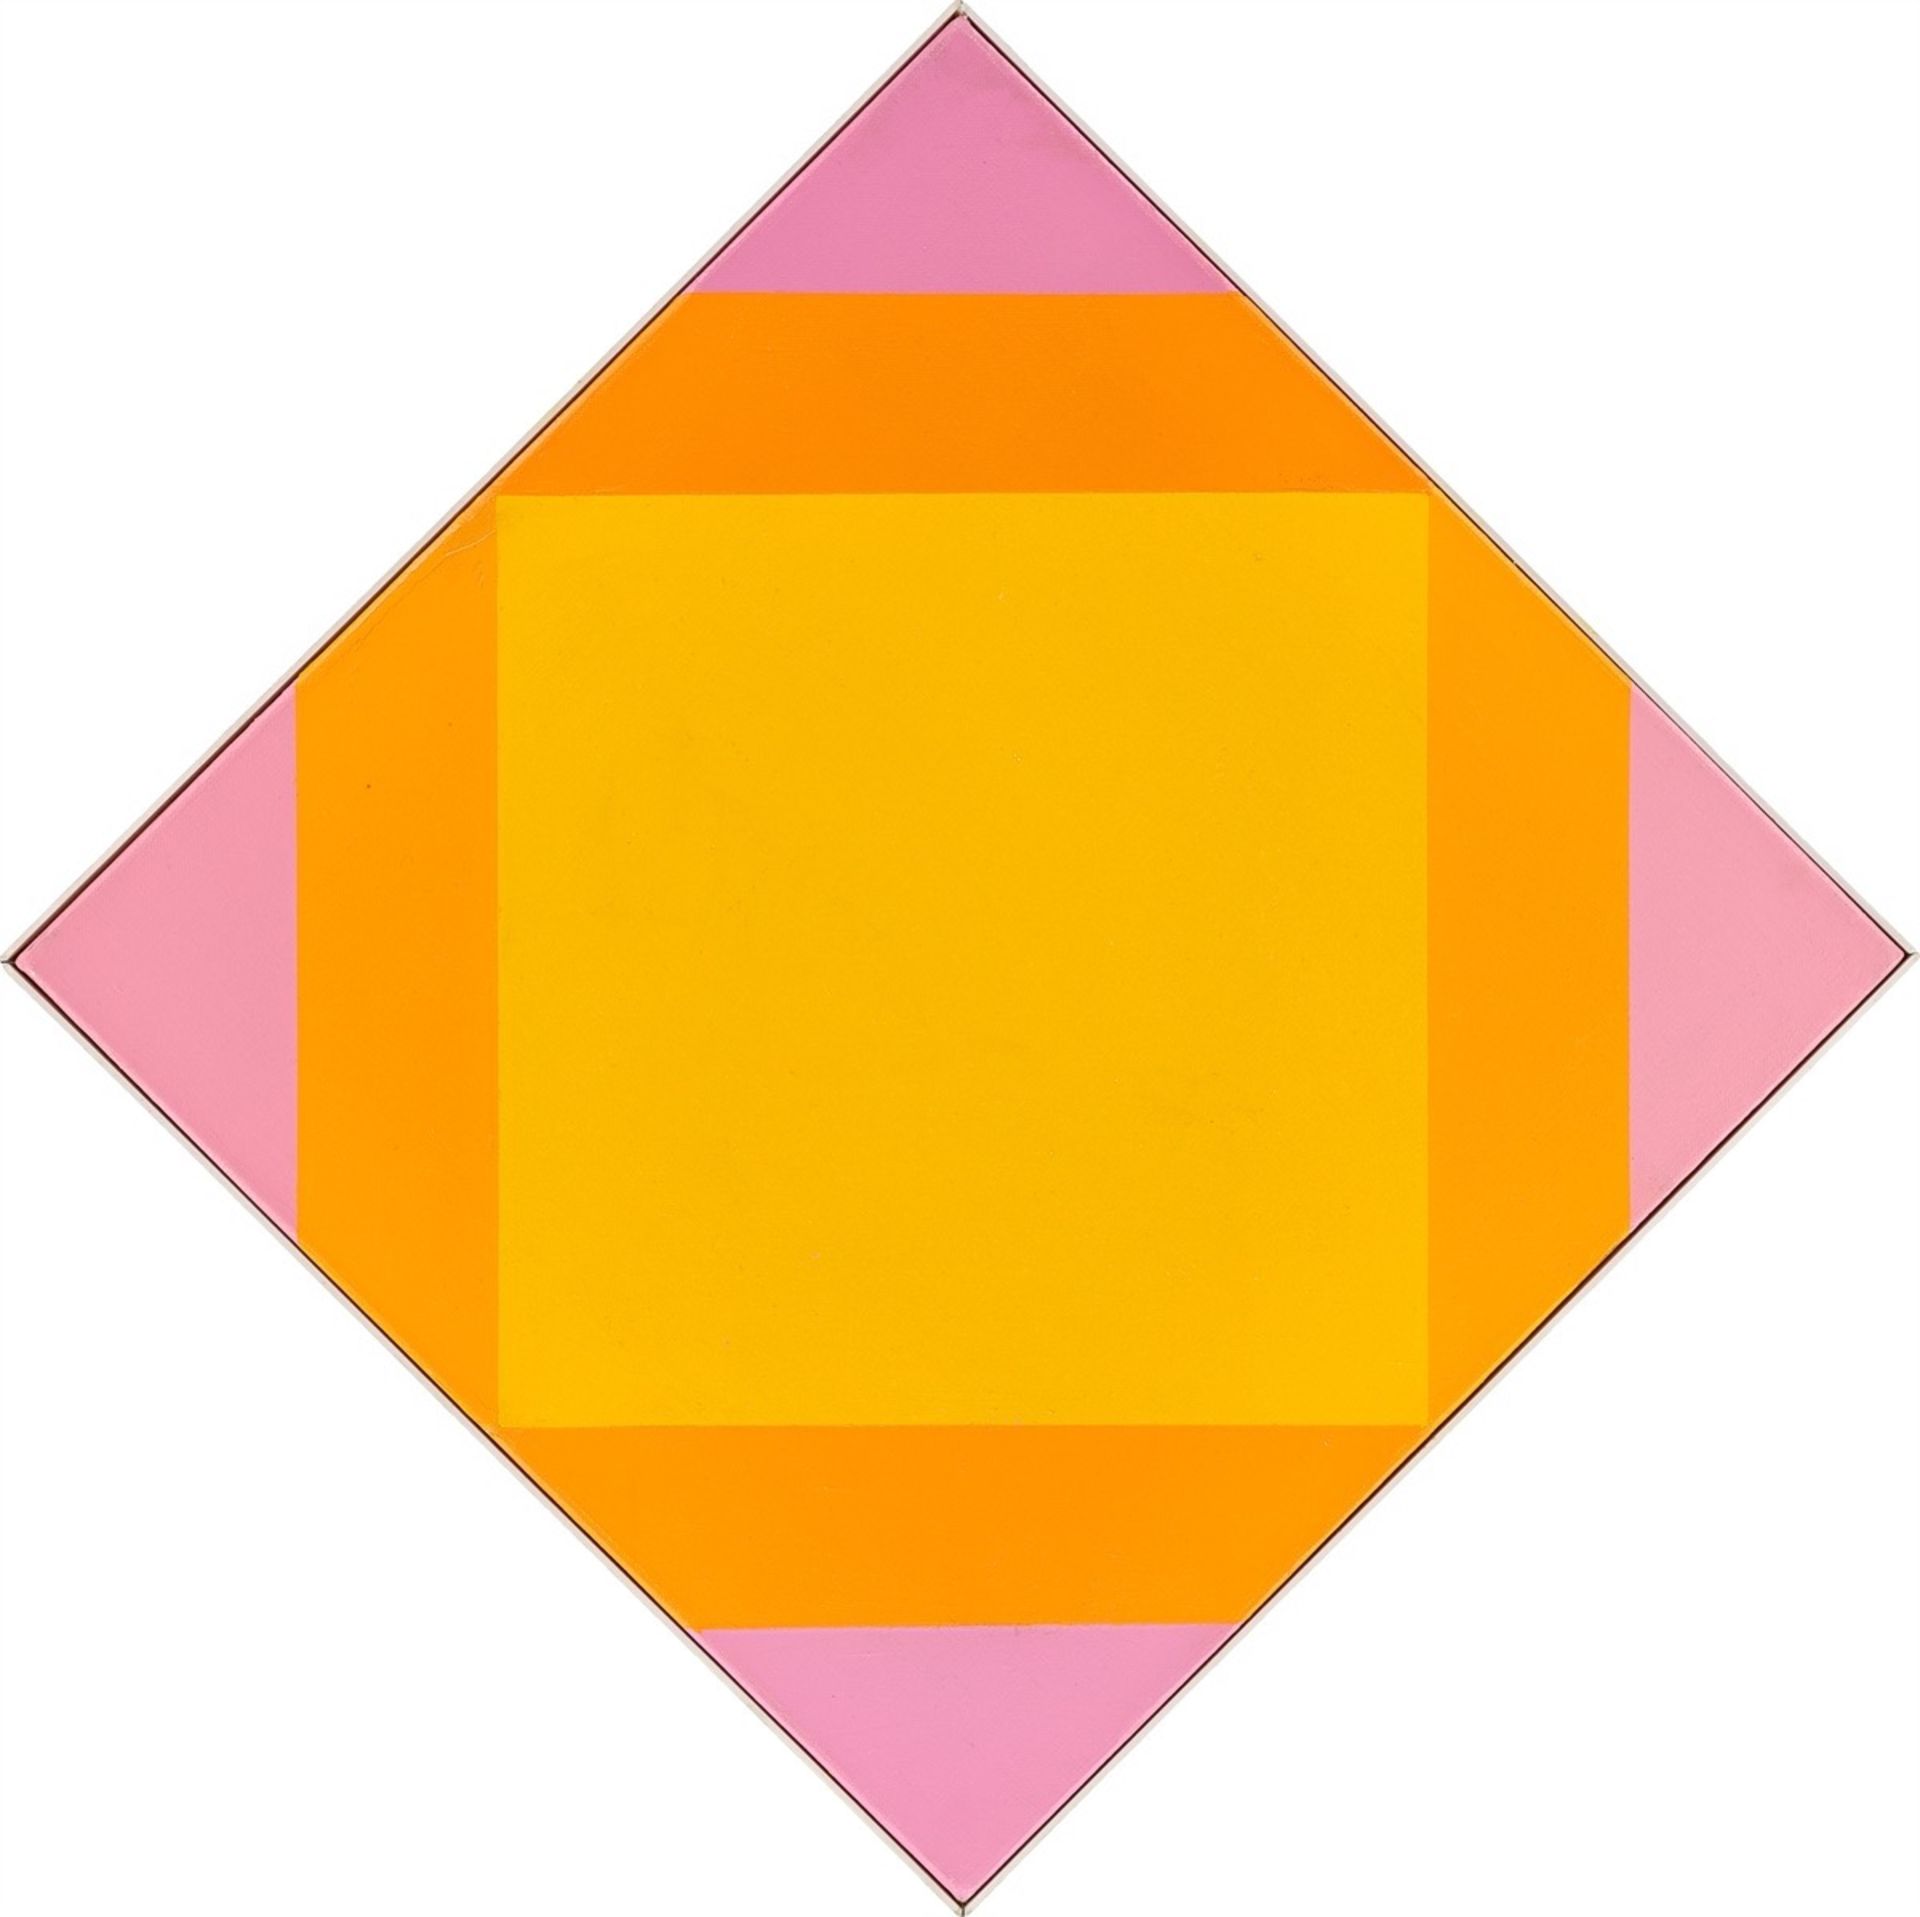 Max Bill. „Strahlung aus gelbem Kern“. 1972-74